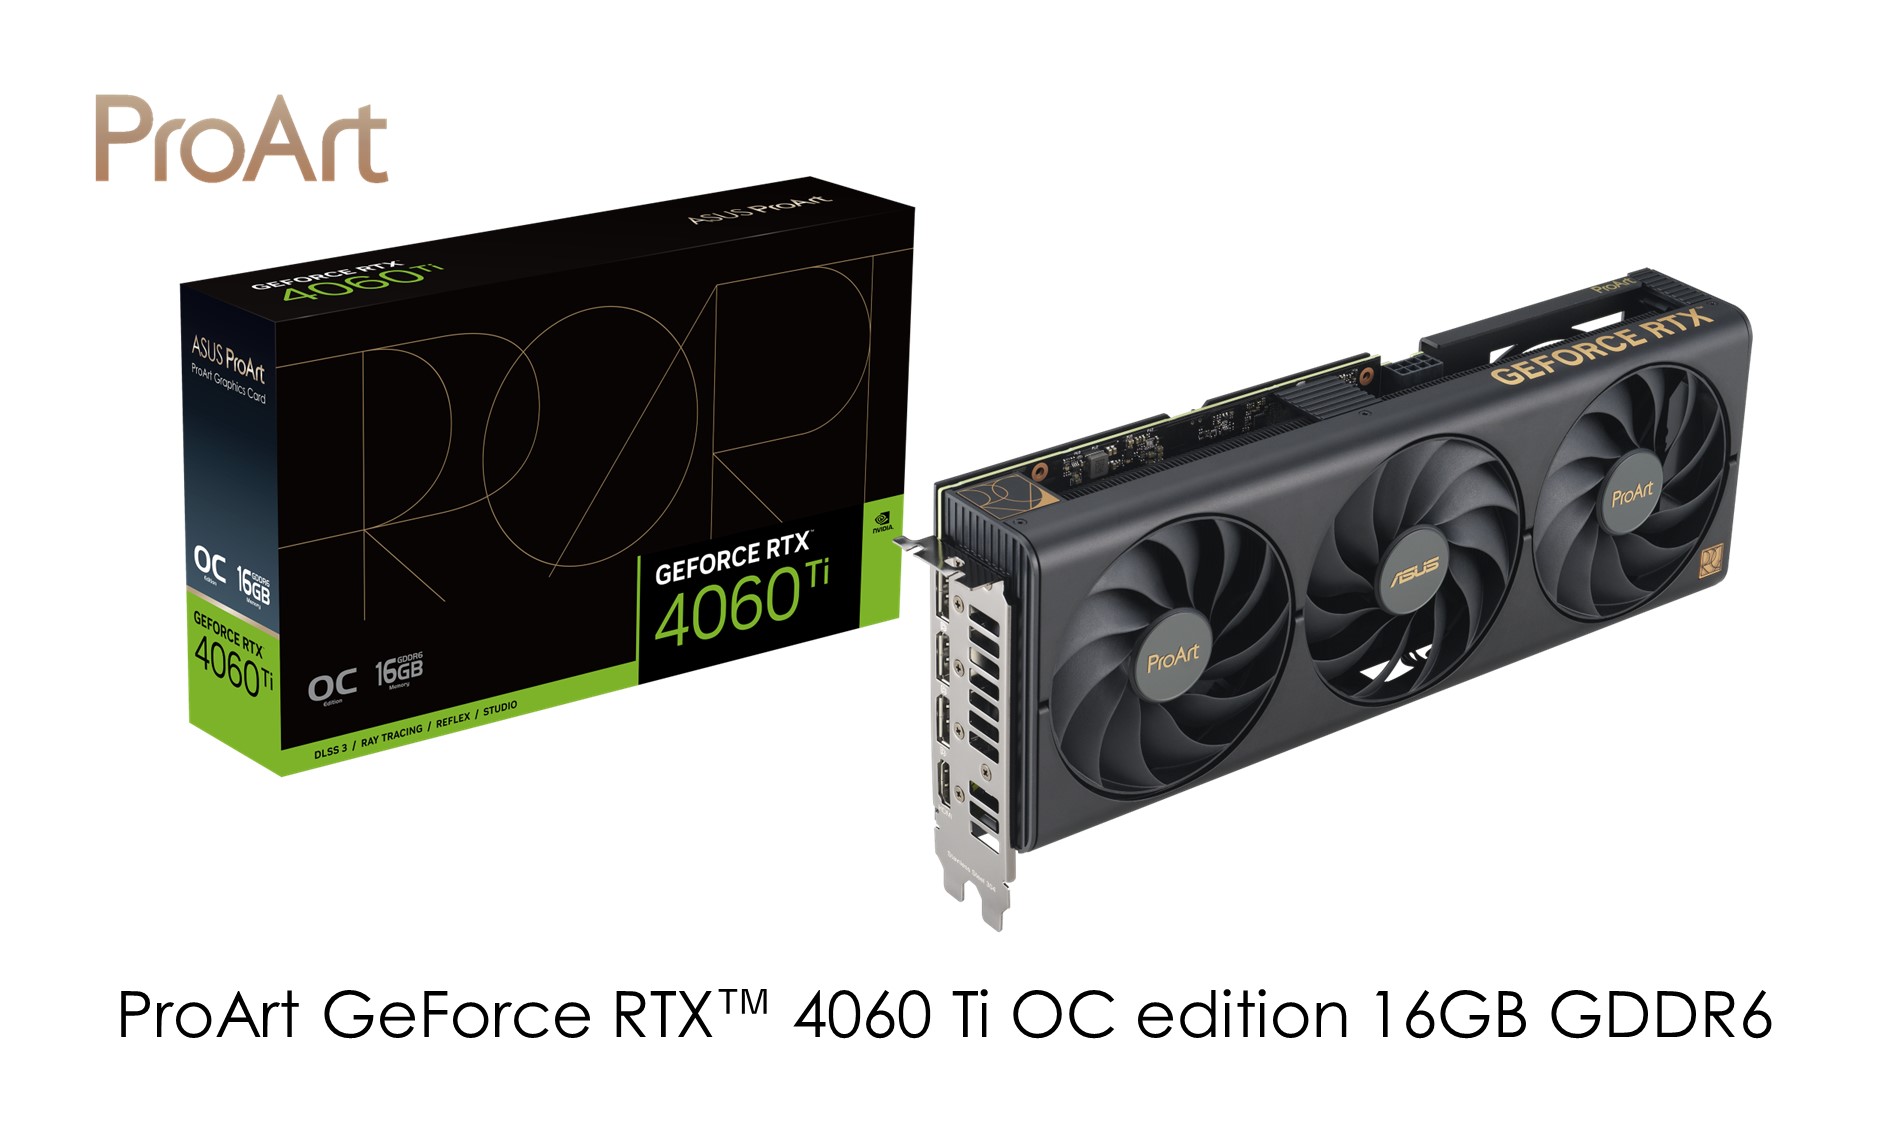 ASUSのクリエイター向けブランドのProArtよりNVIDIA GeForce RTX™ 4060